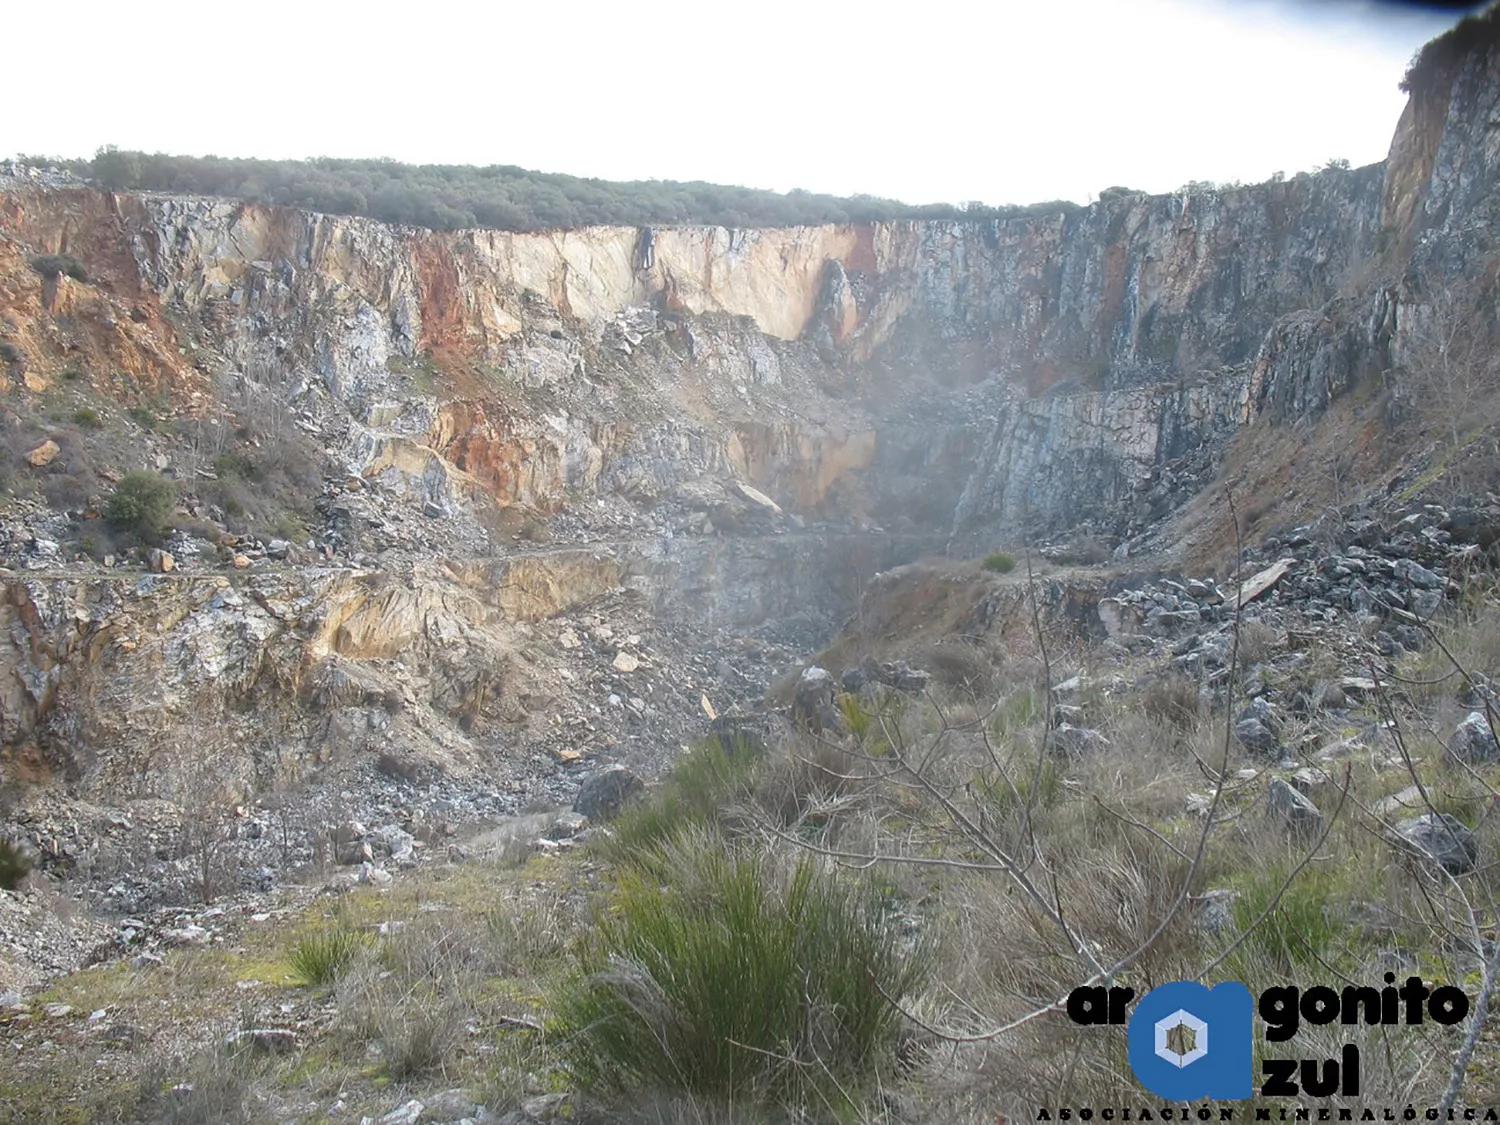 Imagen de la zona que ocupará el proyecto de la mina de metales de Toral de los Vados | Aragonito Azul